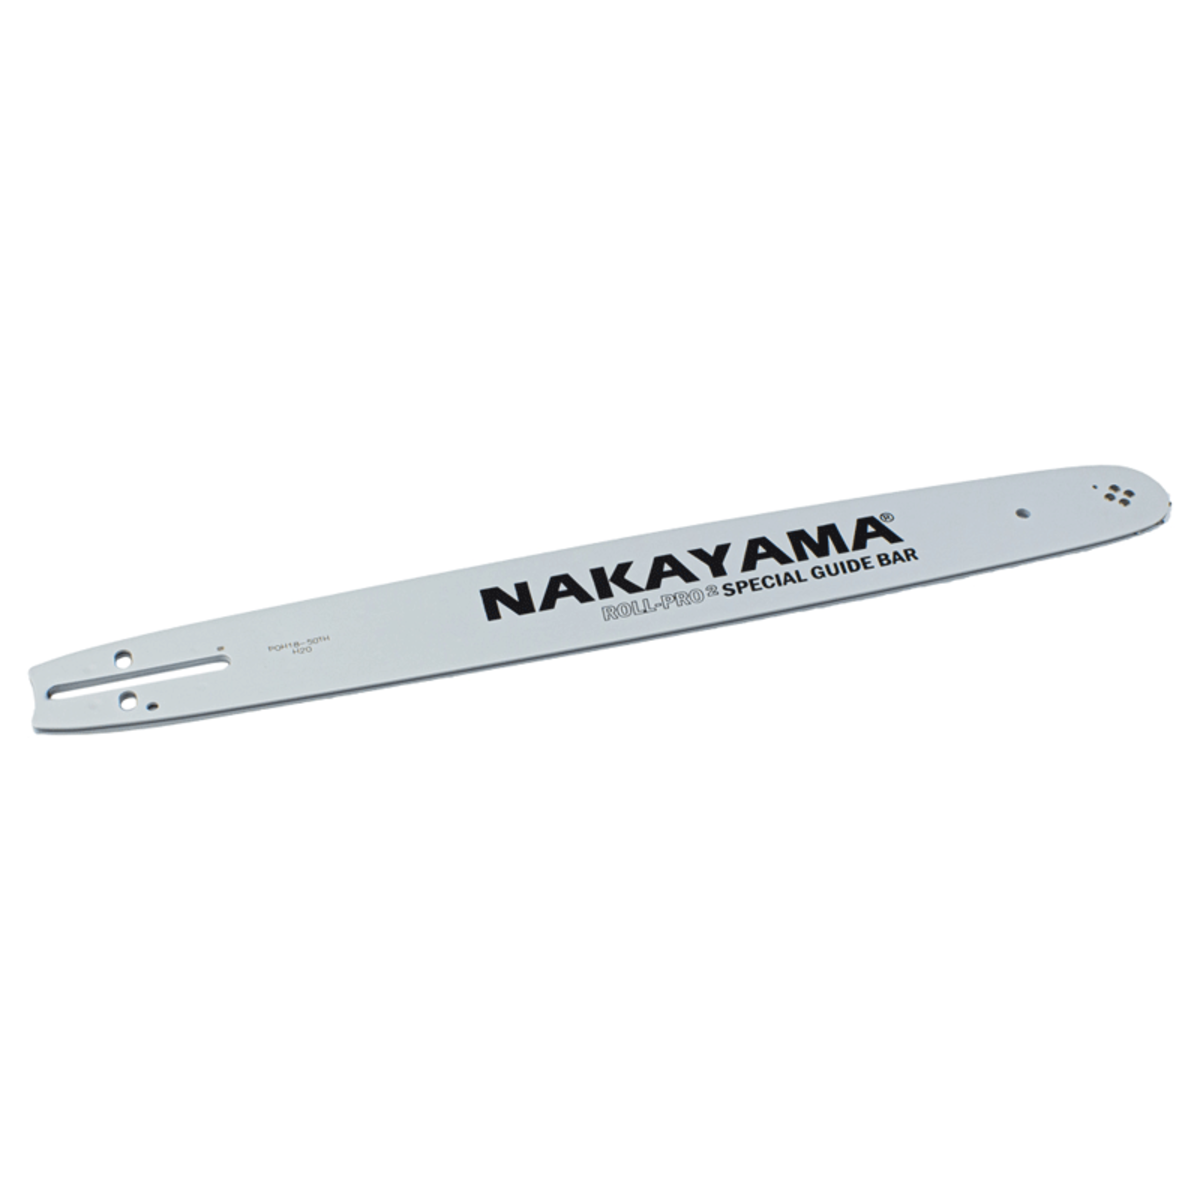 Λάμα Αλυσοπρίονου 45cm/18" 1.5mm NAKAYAMA-MaShop.gr